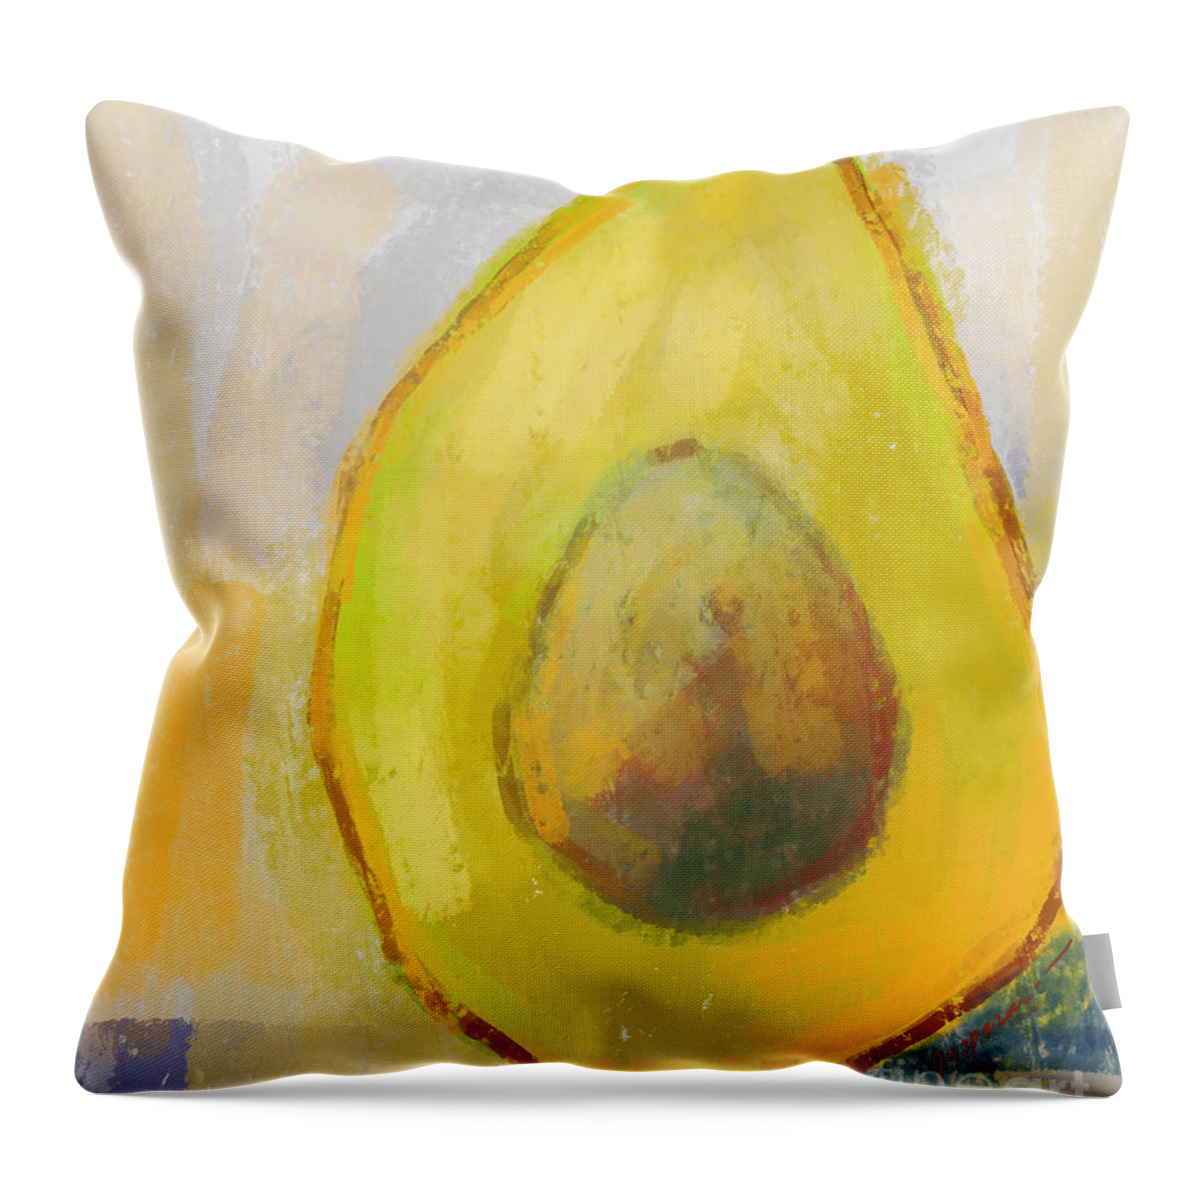 Green Avocado Throw Pillow featuring the digital art Avocado Modern Art Kitchen Decor #2 by Patricia Awapara